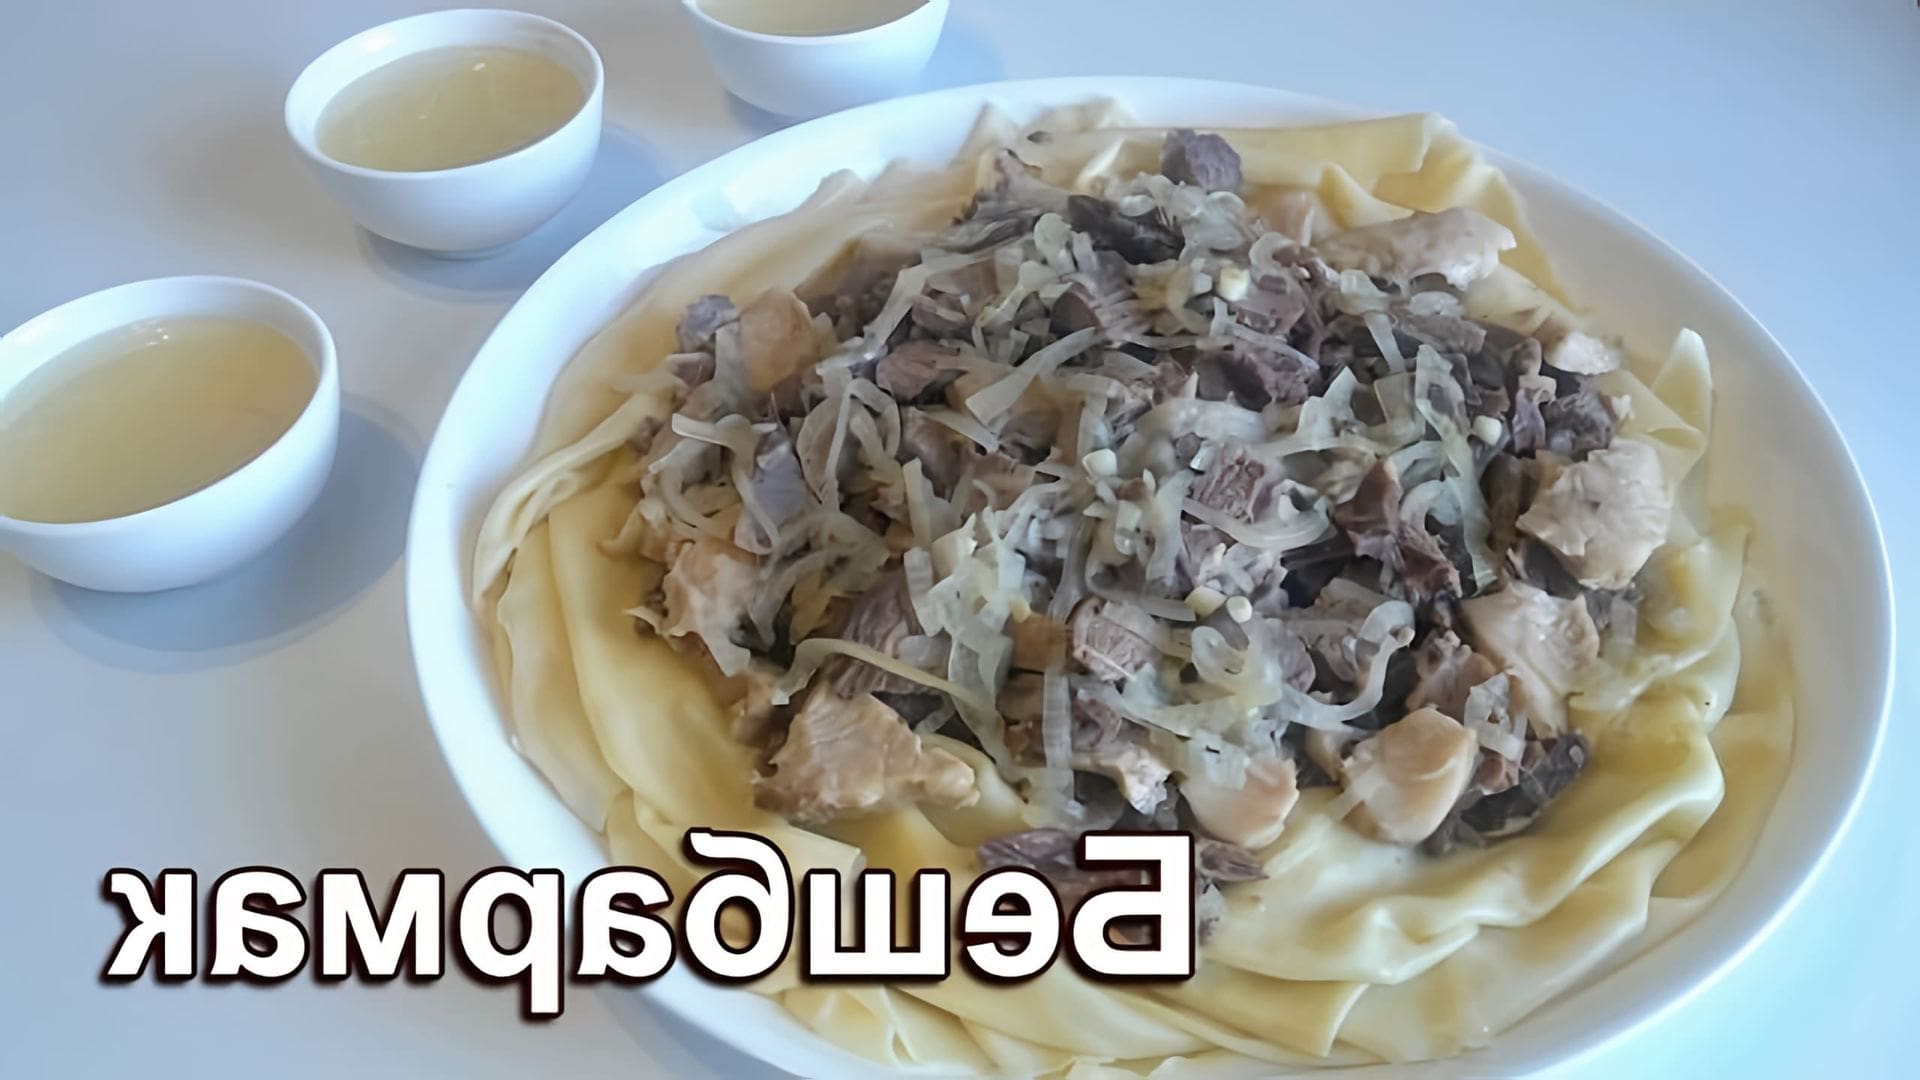 В этом видео демонстрируется процесс приготовления традиционного казахского блюда - бешбармака из баранины